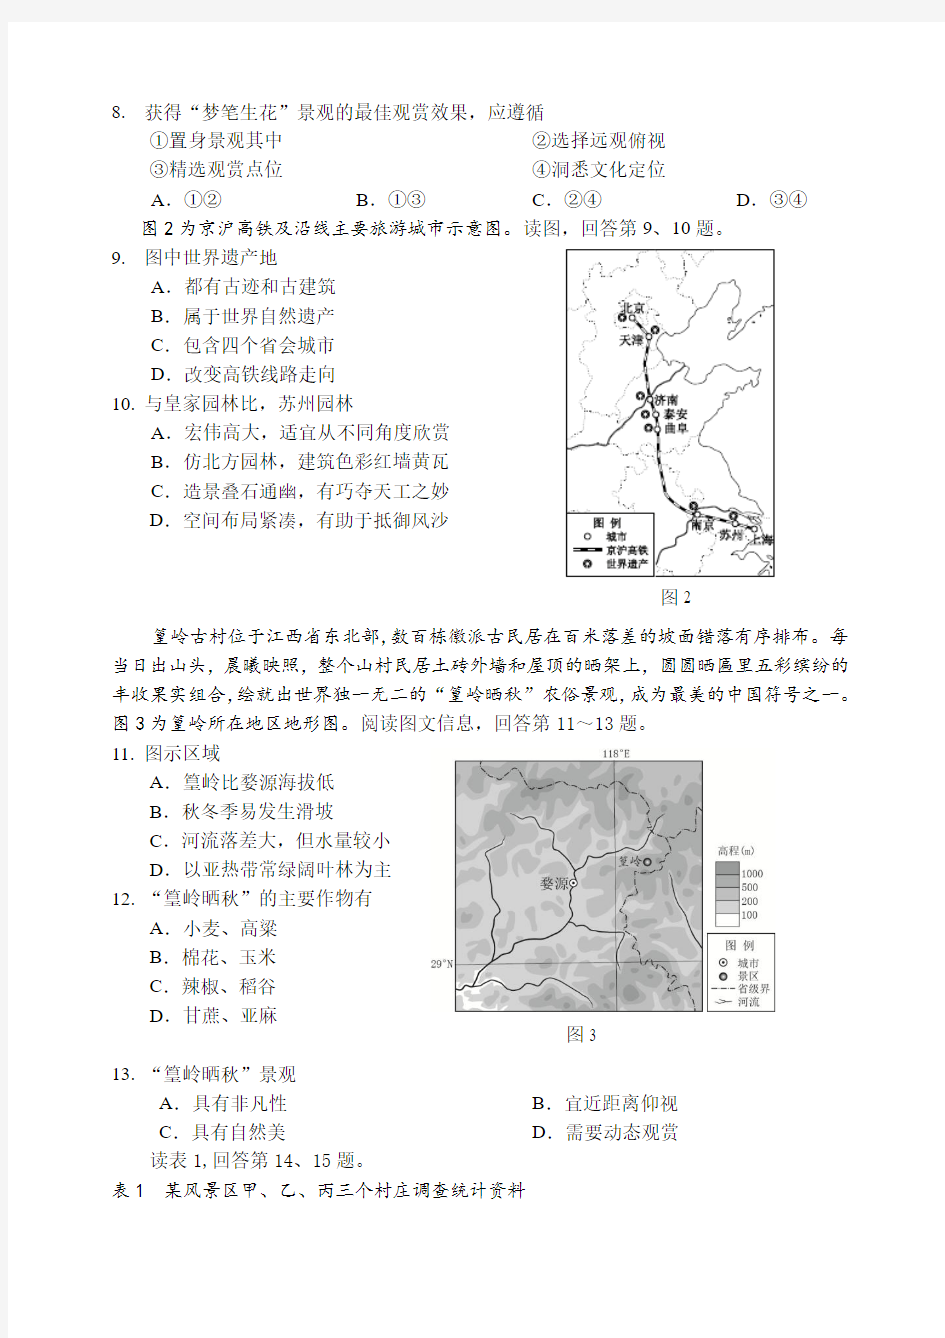 北京市西城区2016—2017学年度第二学期期末考试高二地理试卷及答案